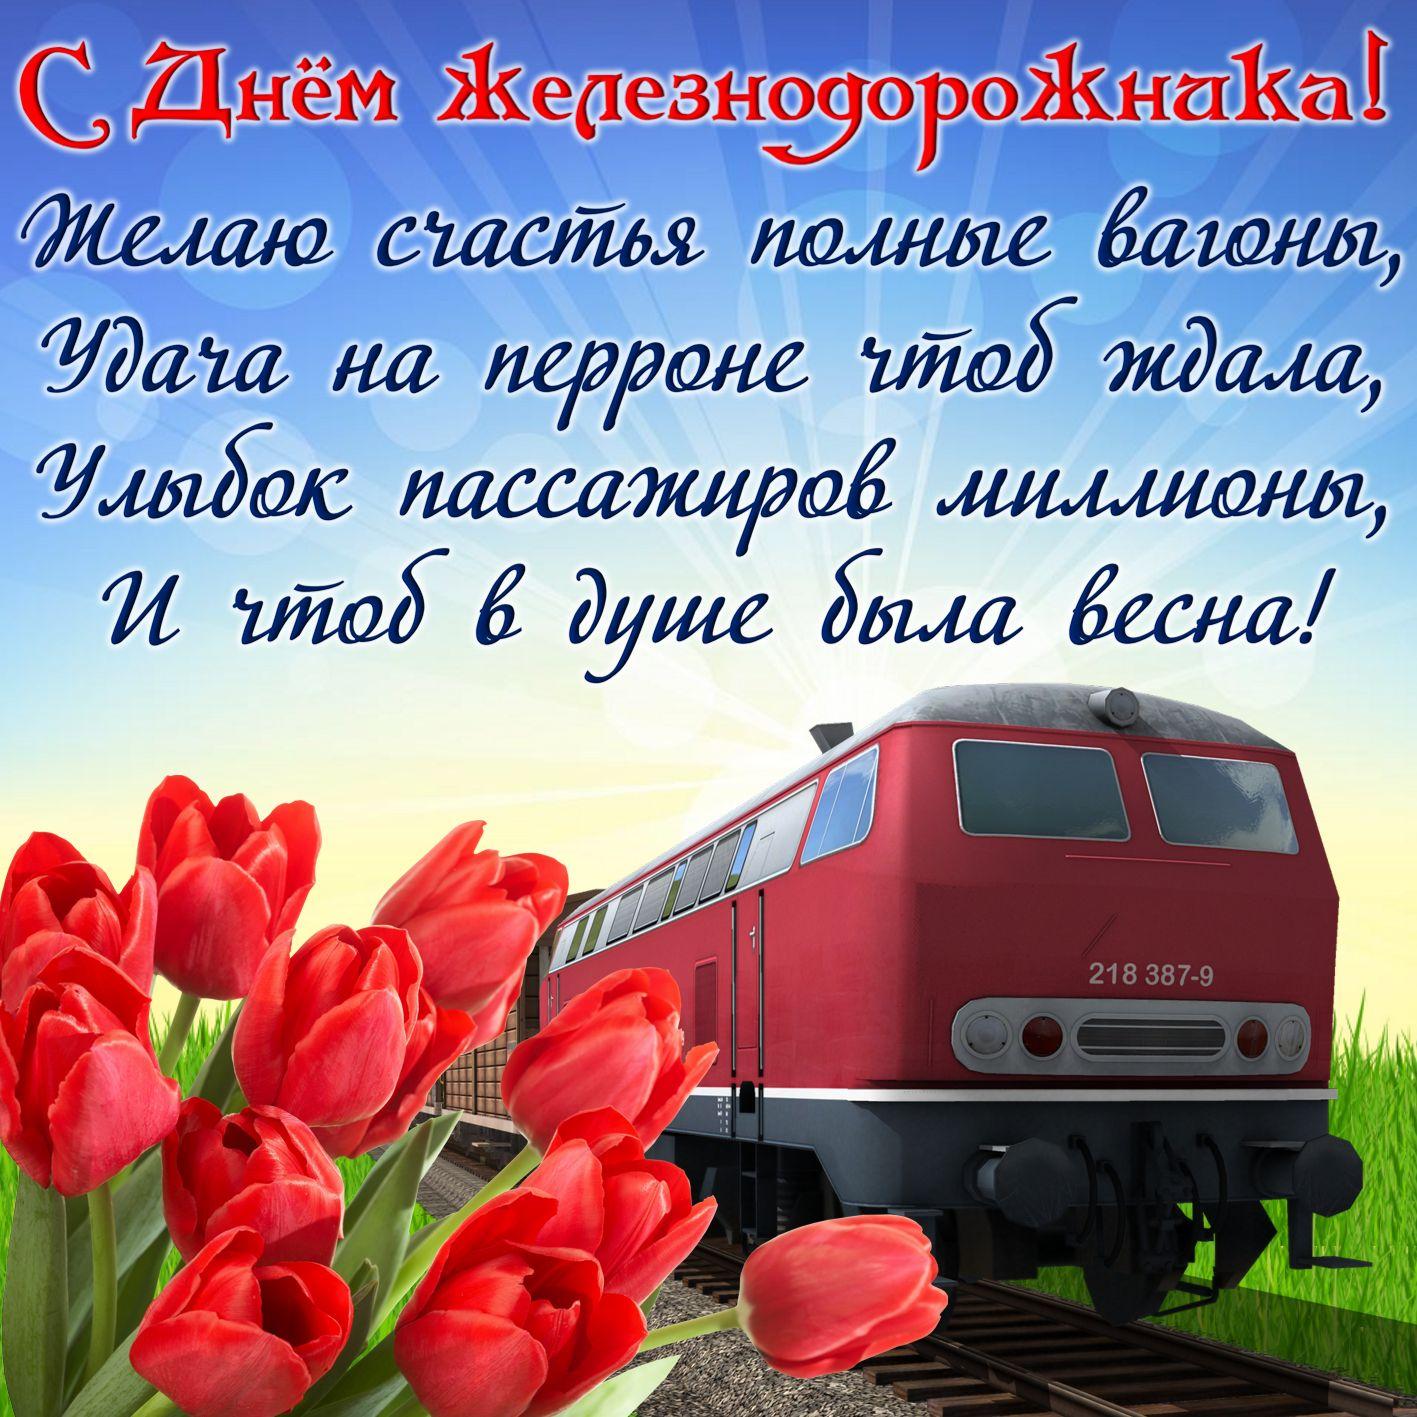 Фото День железнодорожника 7 августа 2022: новые красивые открытки с поздравлениями в стихах и прозе 7